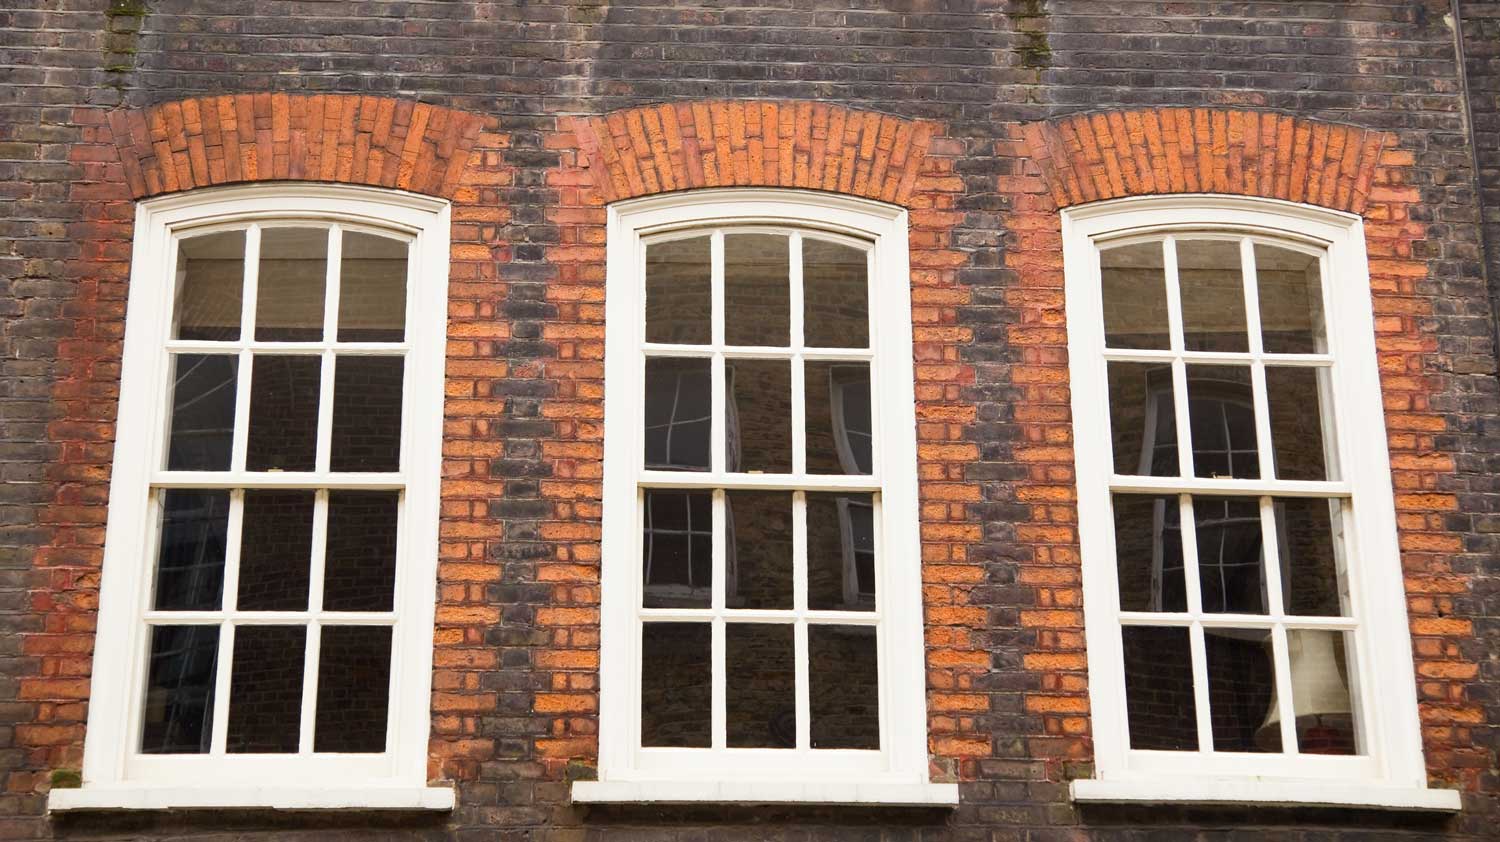 3 sash windows with white frames